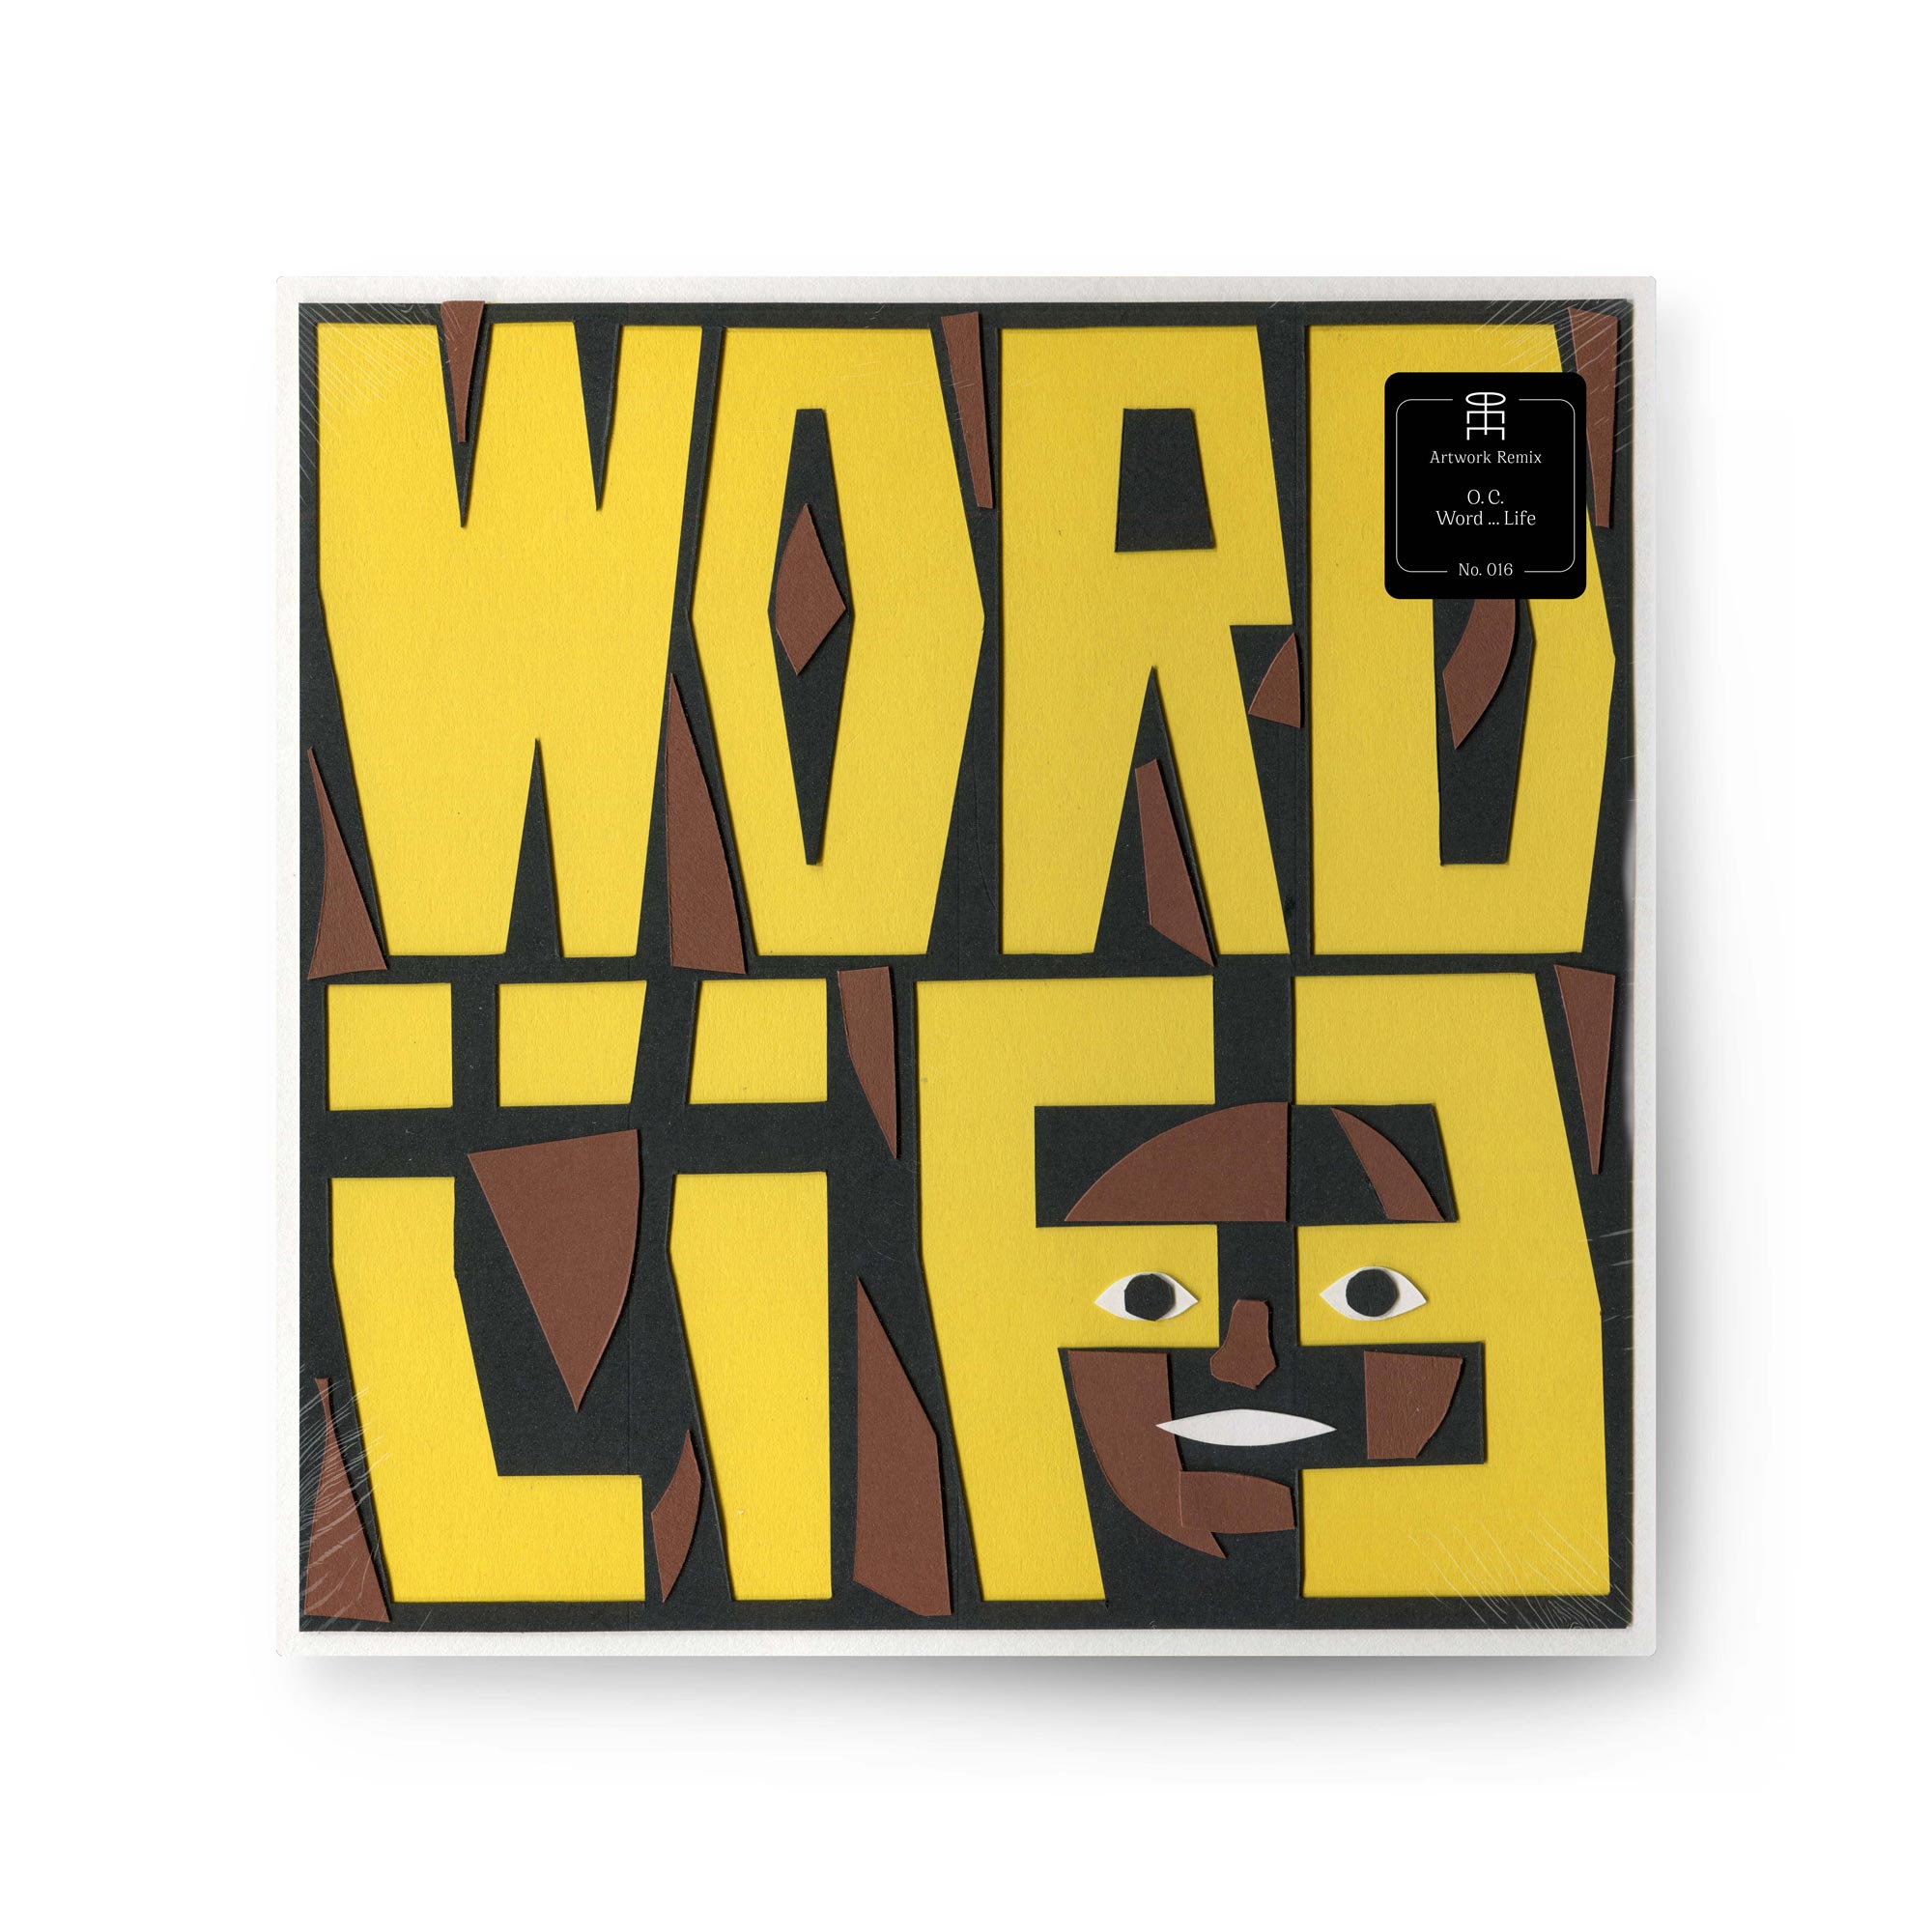 OC_Word-Life_Artwork-Remix_Pierre-von-Helden